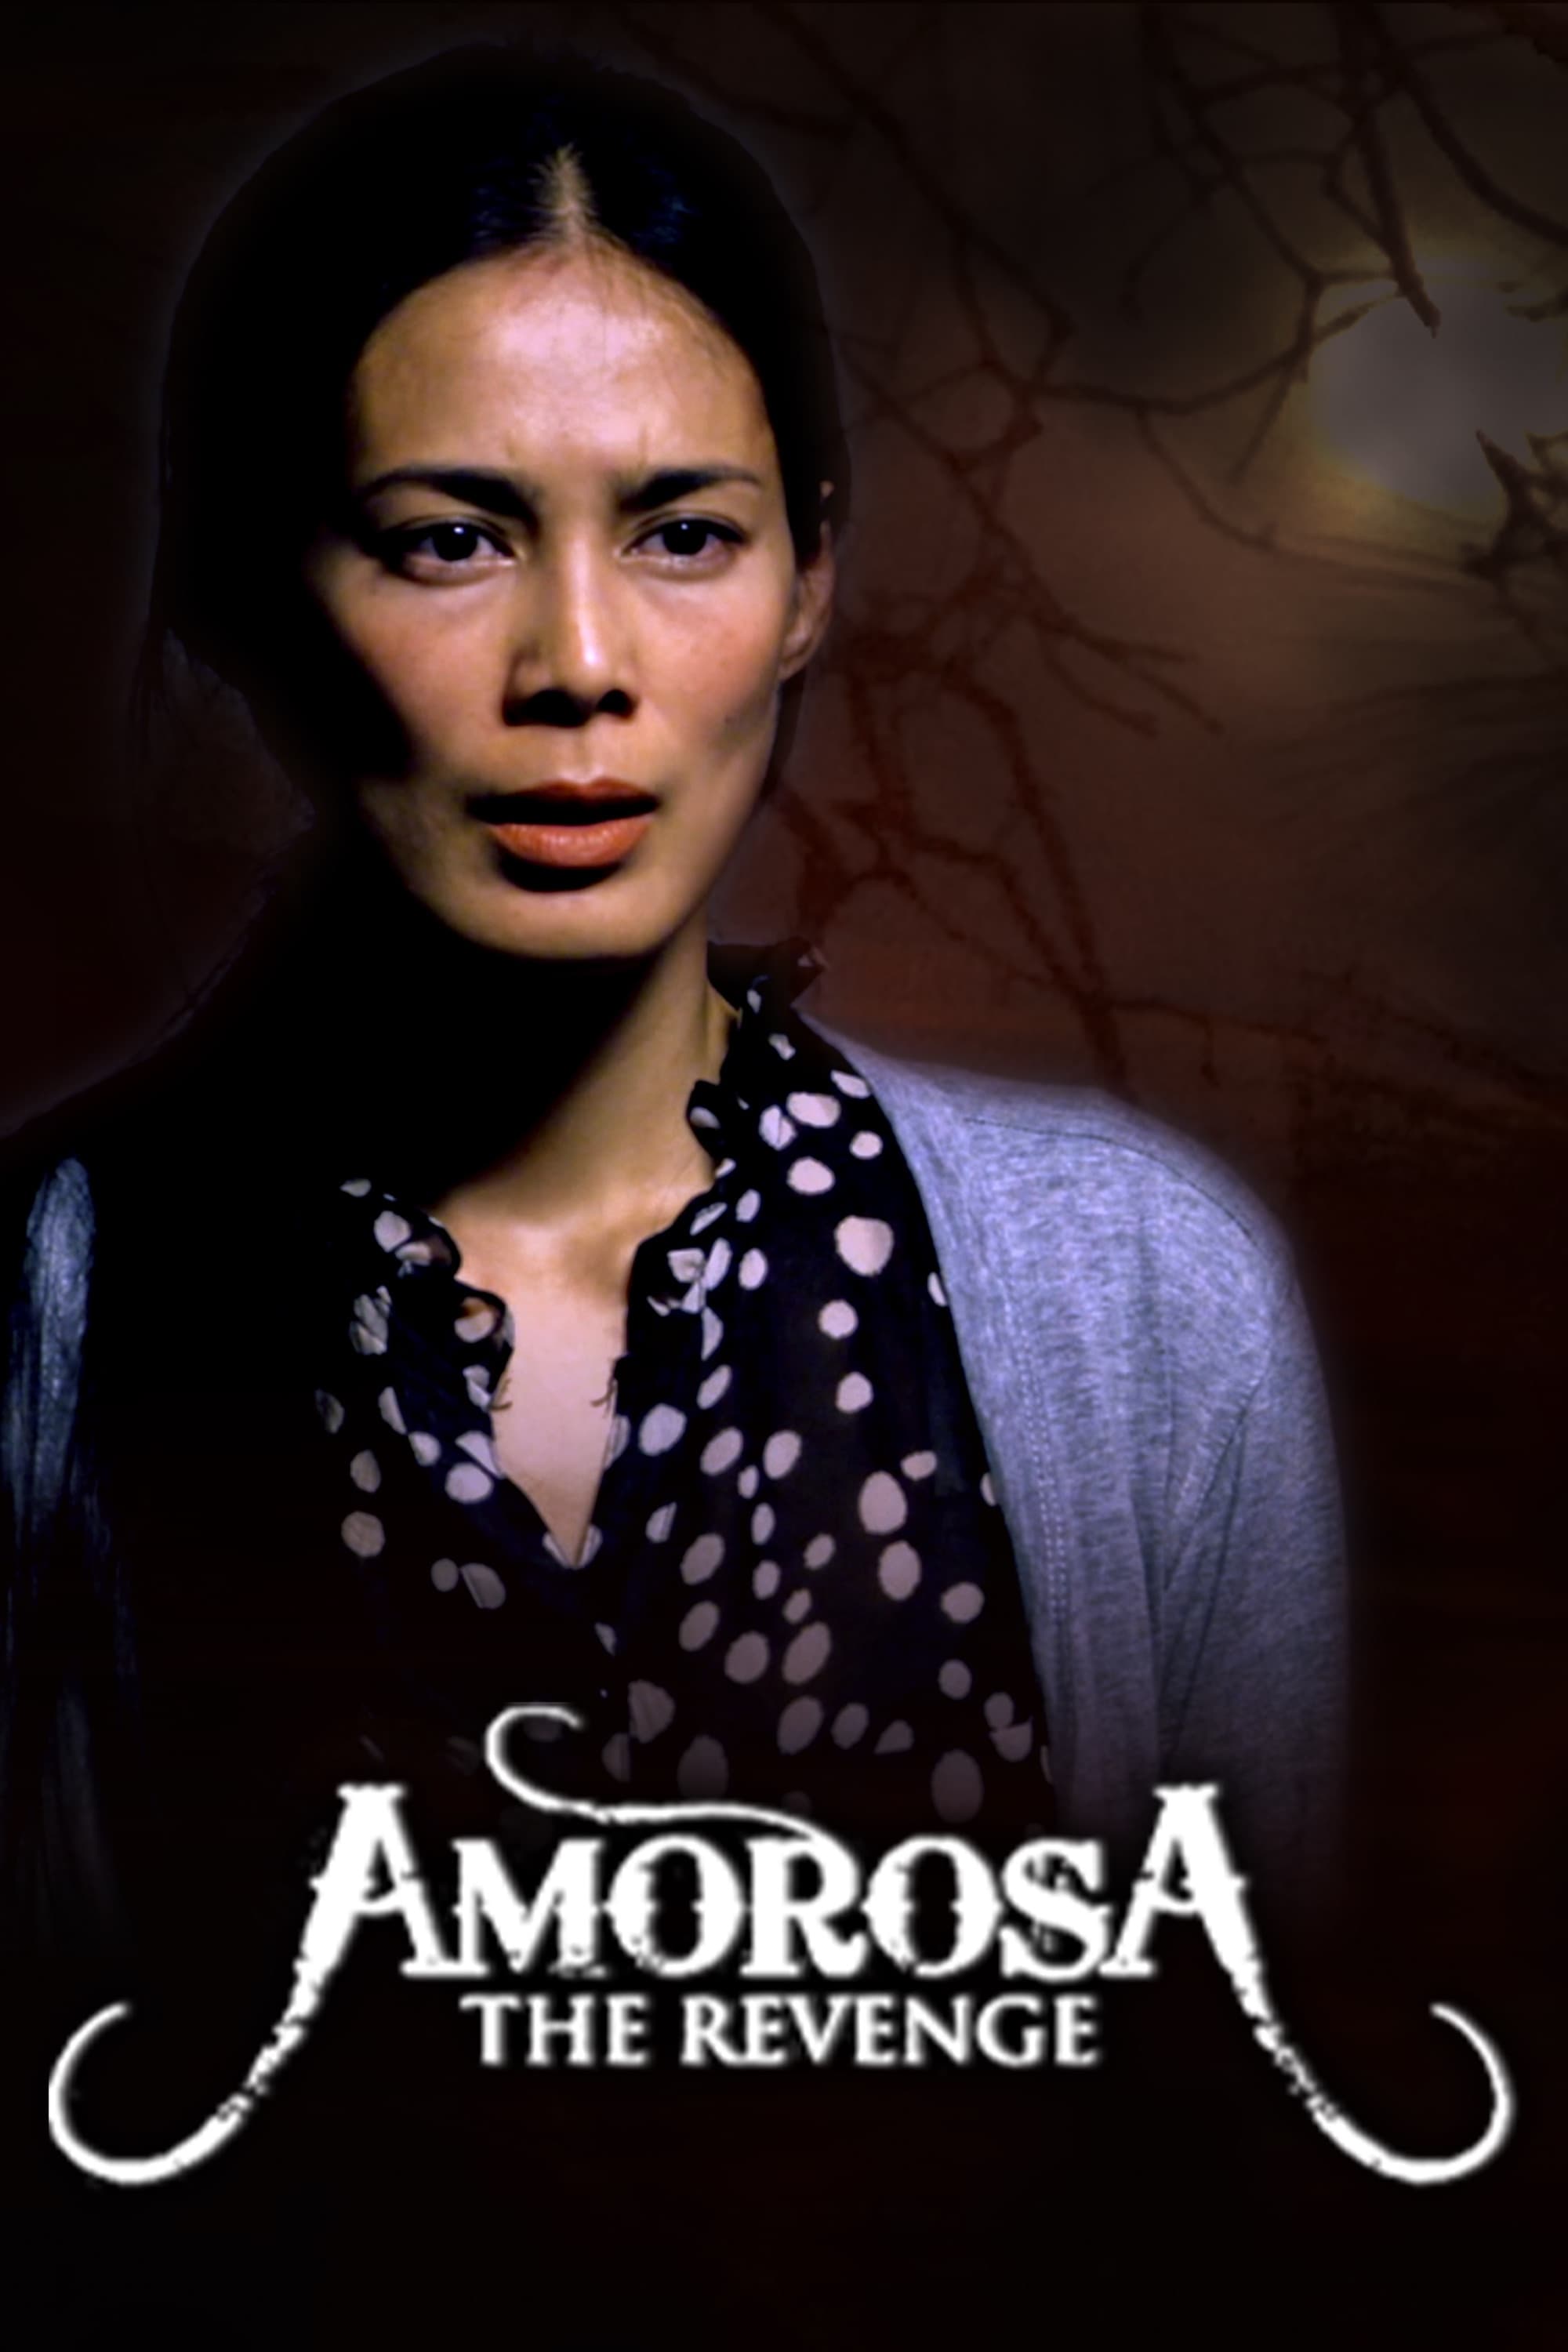 Amorosa: The Revenge film